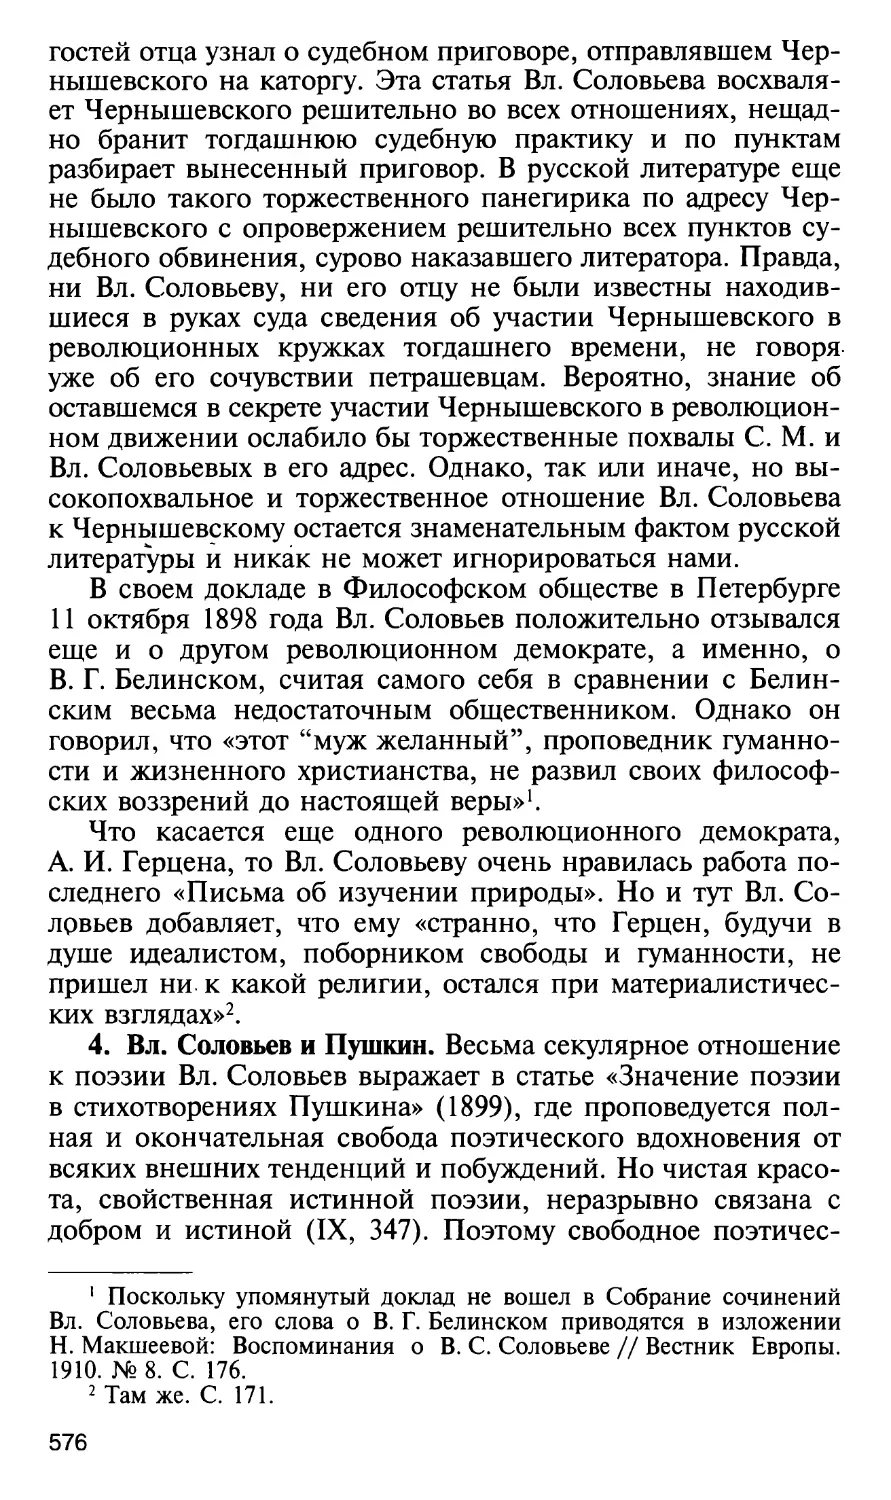 4. Вл. Соловьев и Пушкин